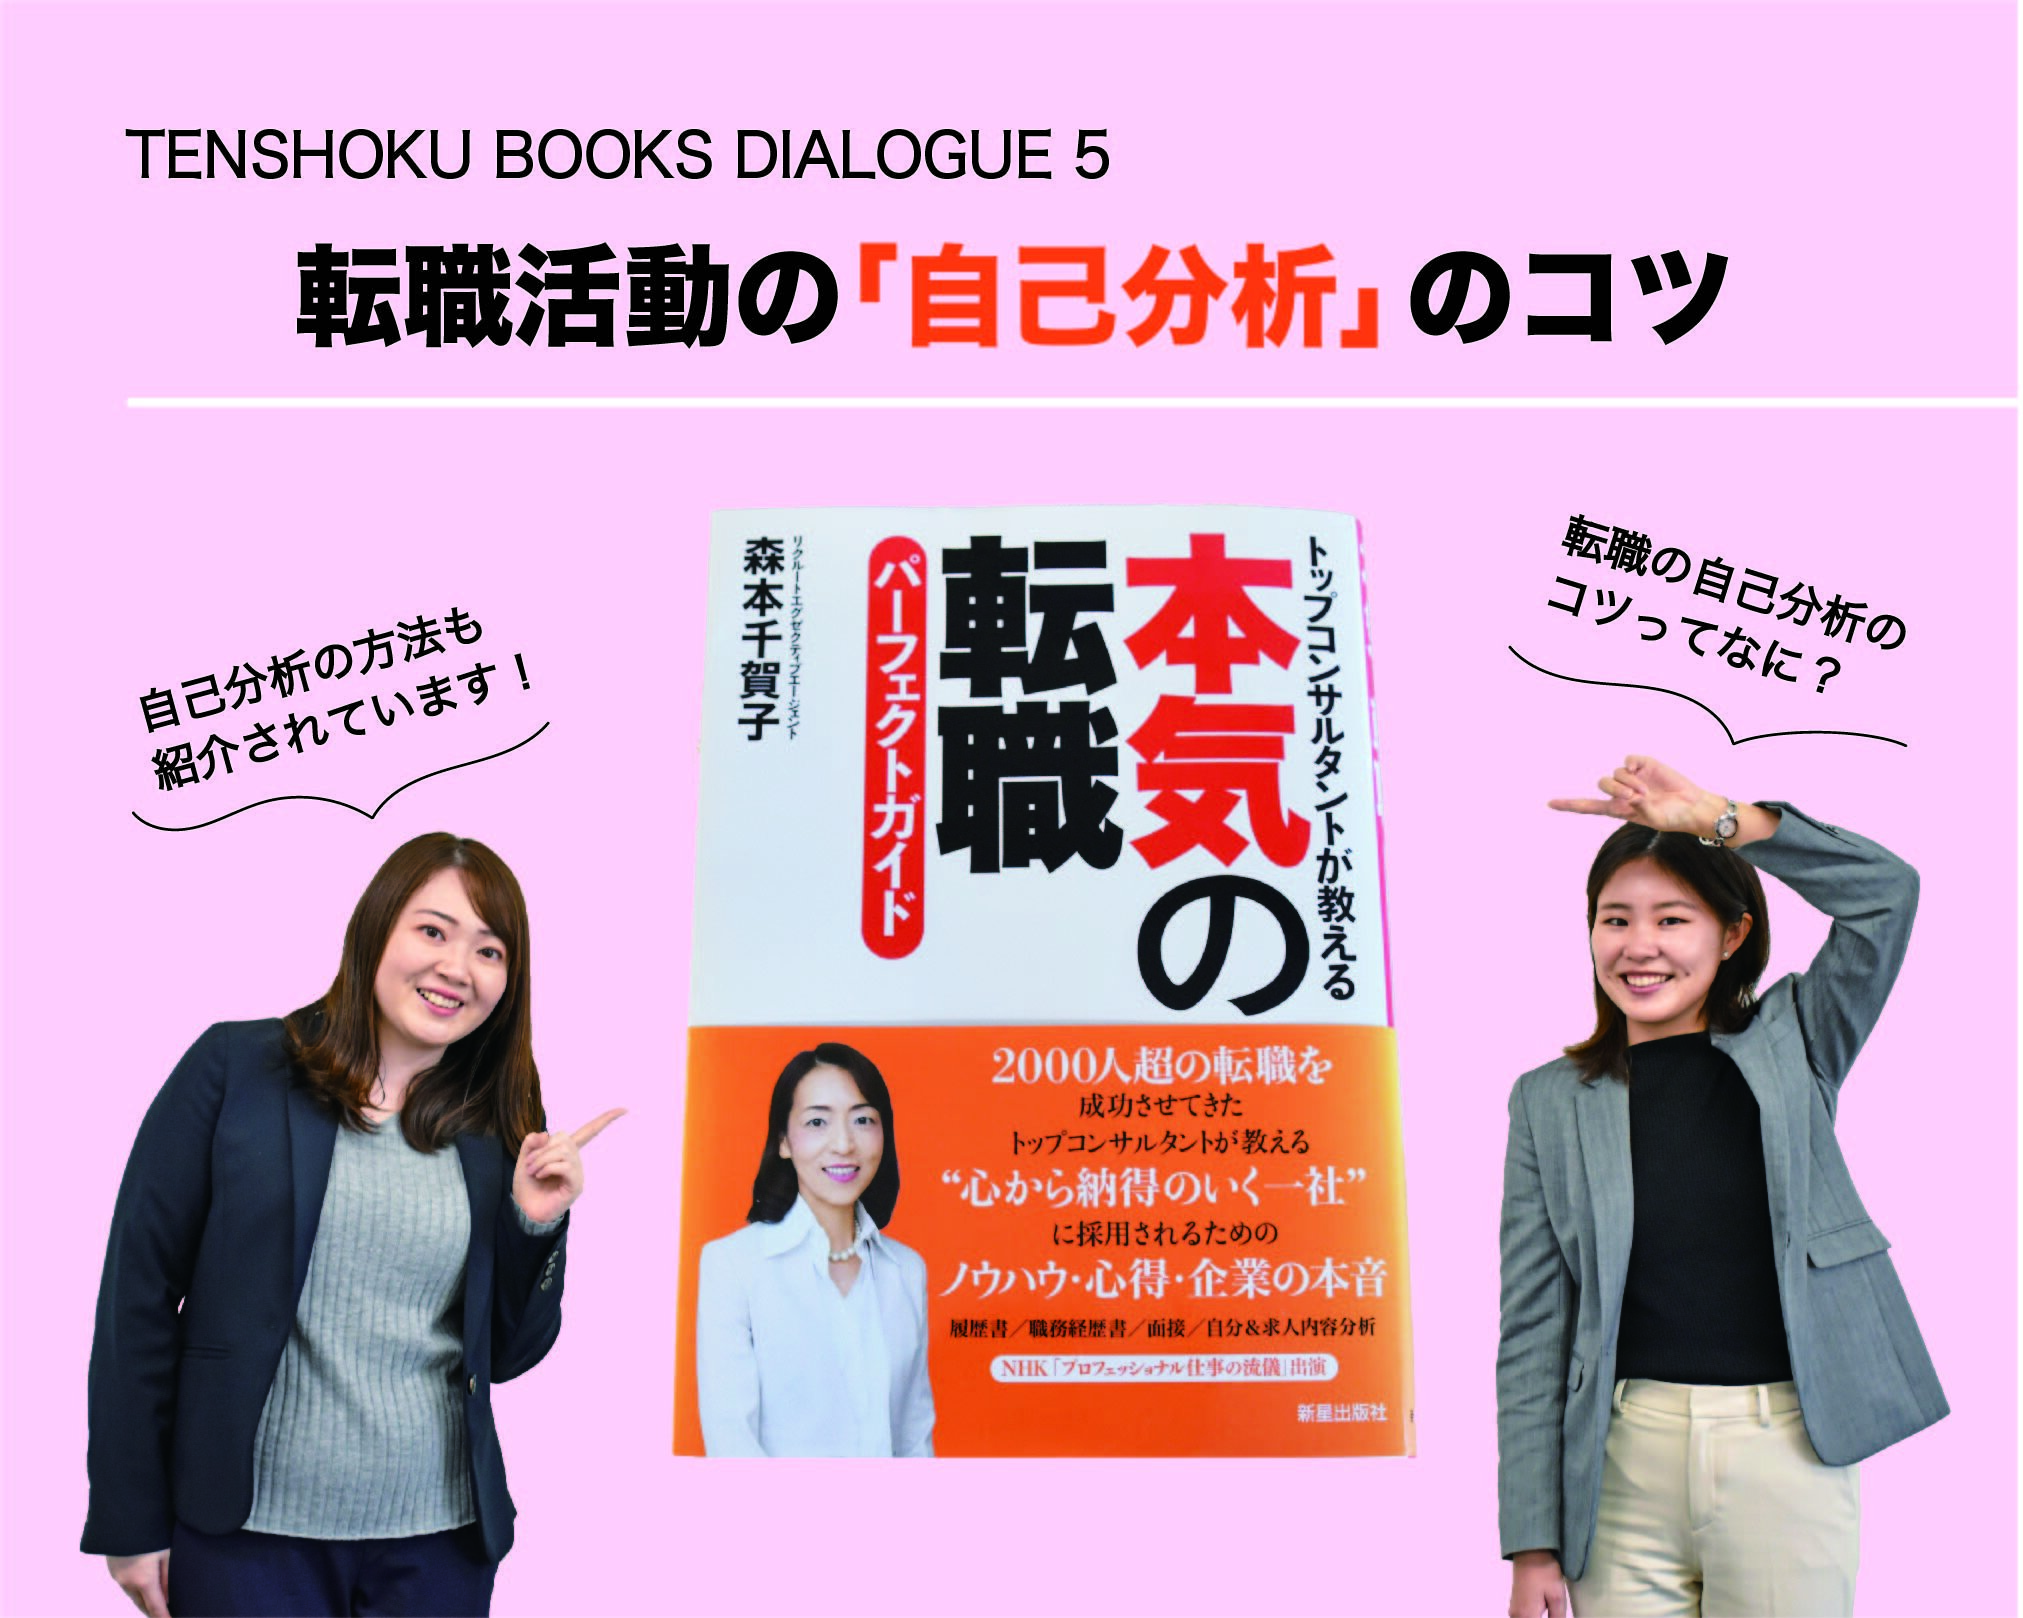 【TENSHOKU BOOKS DIALOGUE5】 『本気の転職パーフェクトガイド』から考える「自己分析」。あなたの「したいこと」を明確にする方法とは。